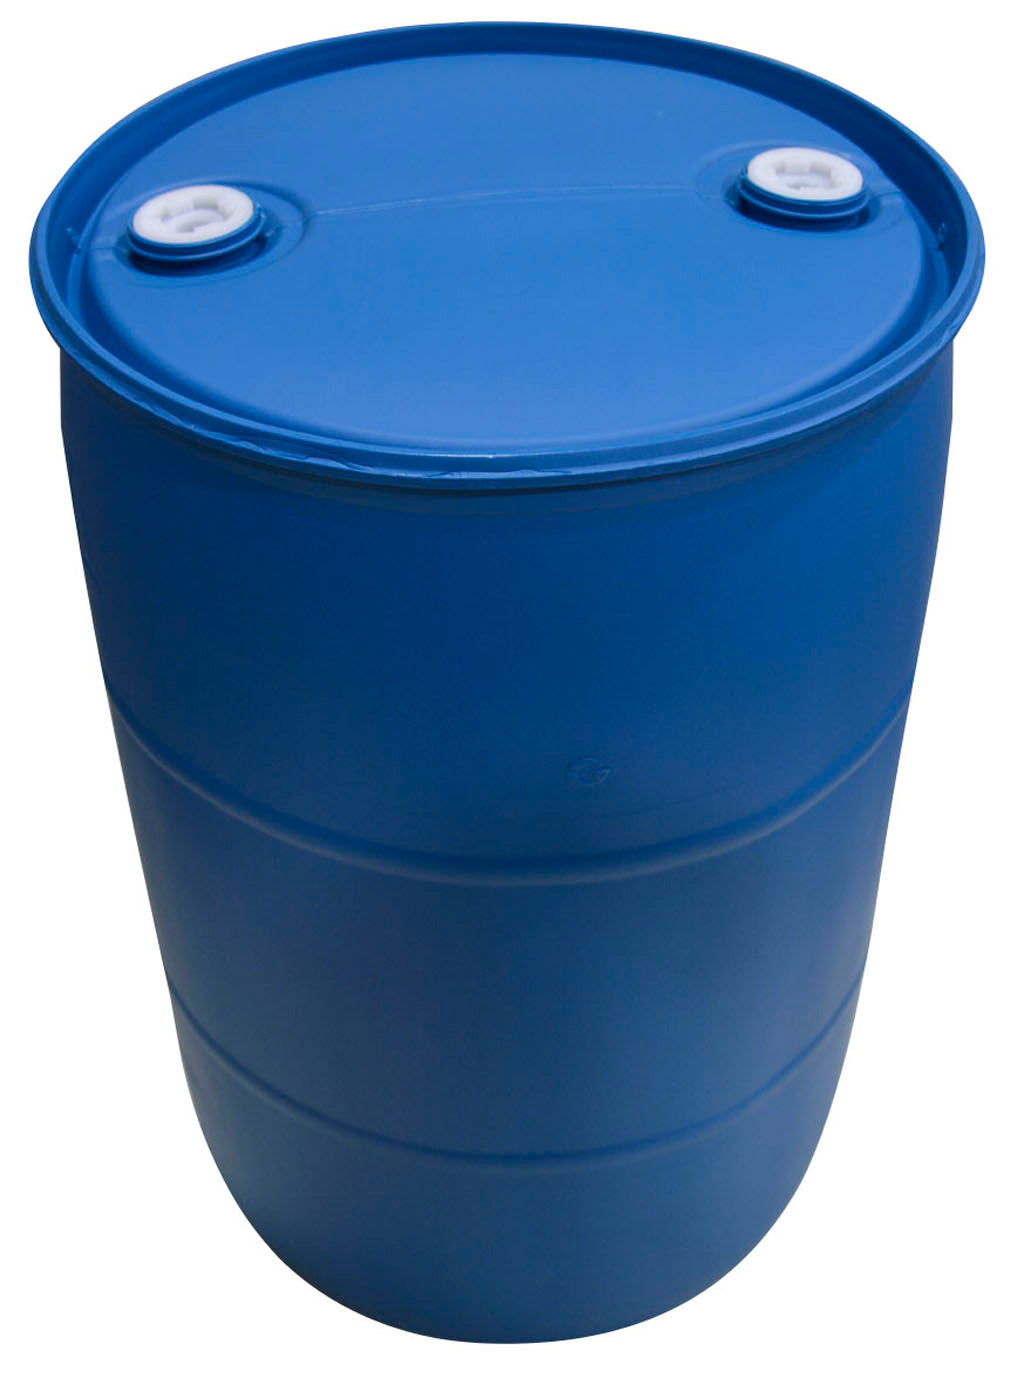 55 Gallon Drum, Blue Plastic Food Grade Barrel